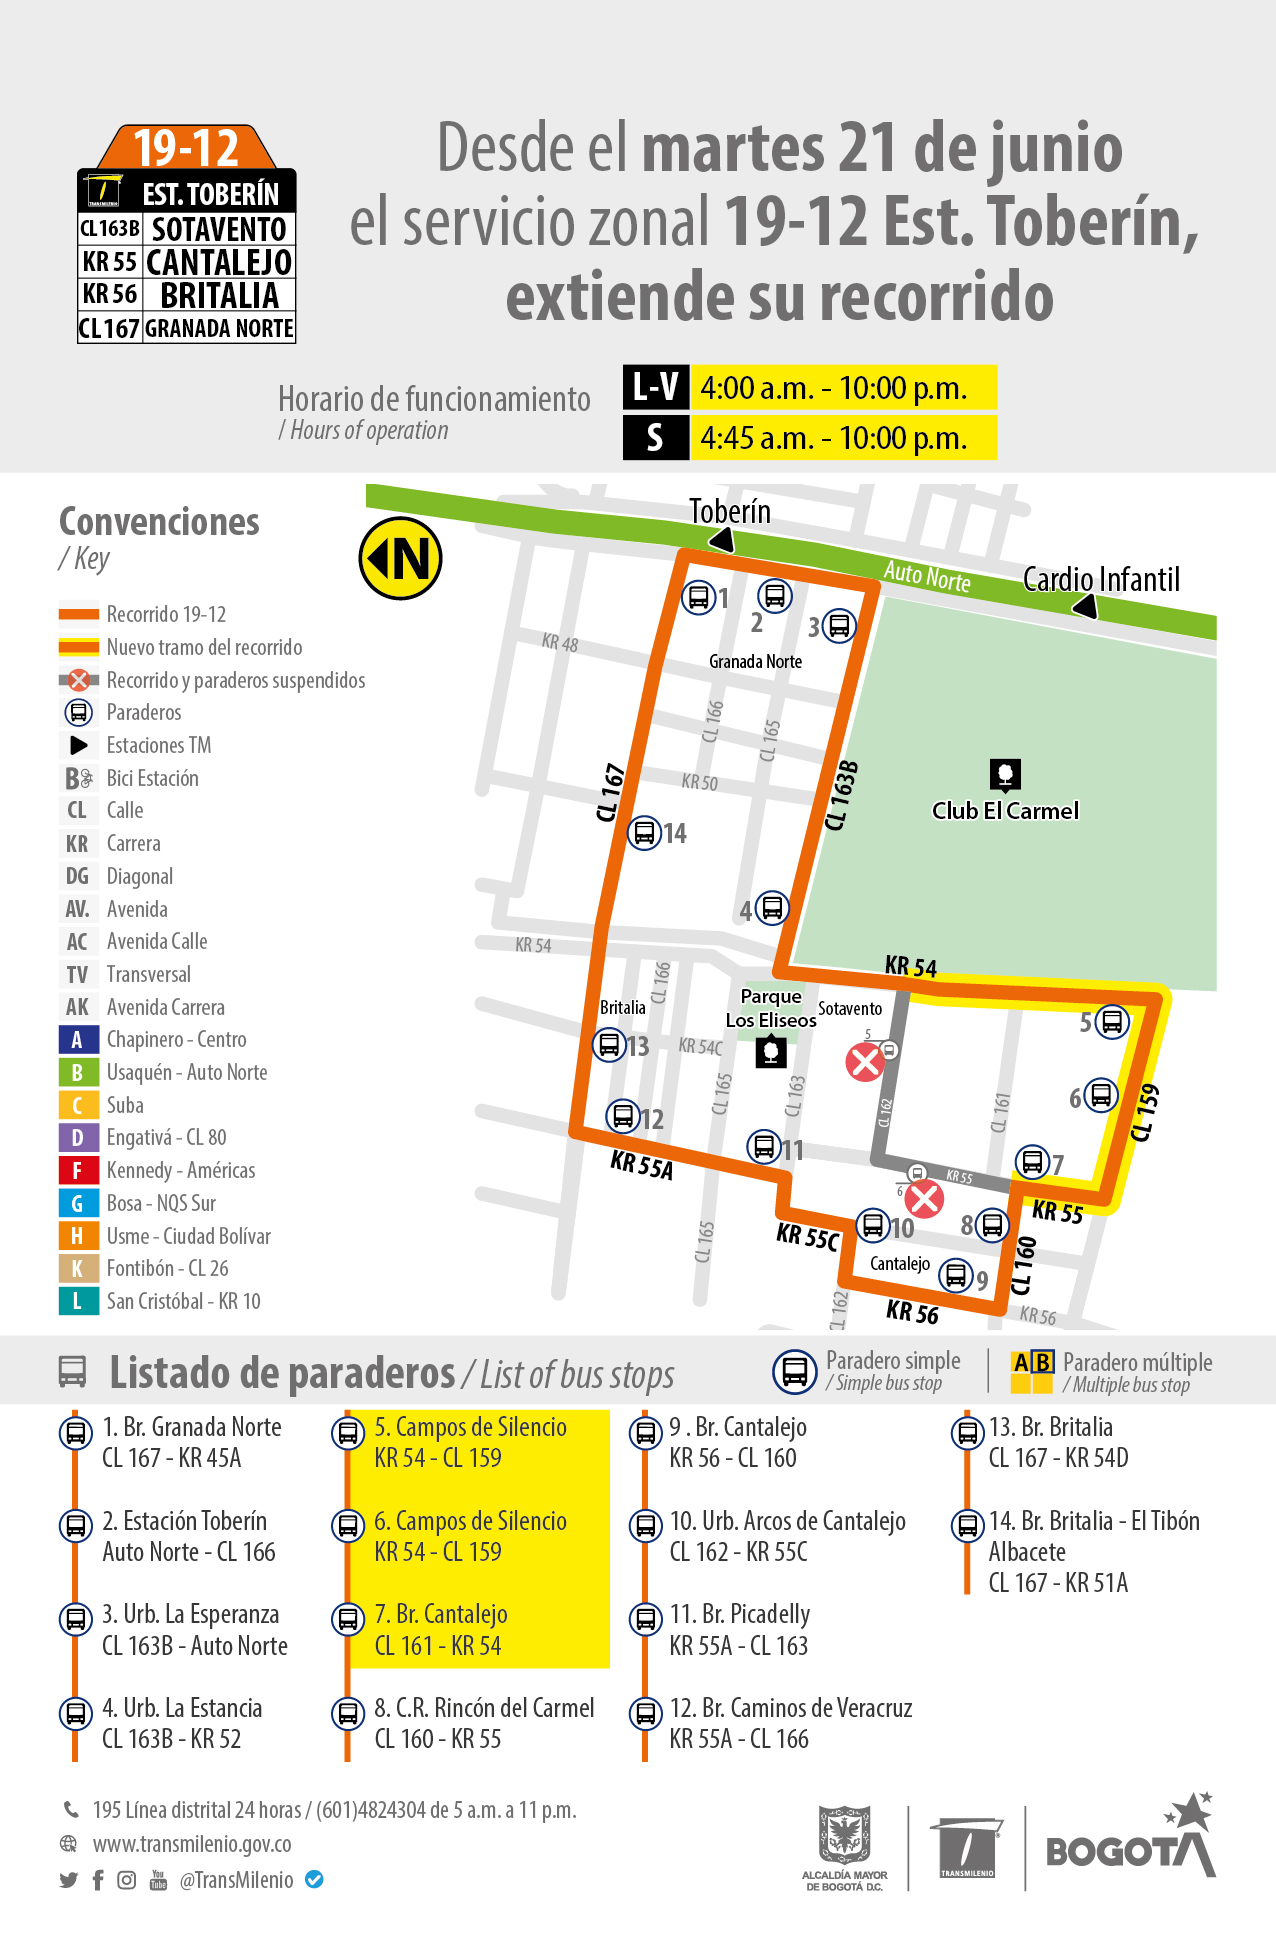 TransMilenio: Servicio zonal 19 – 12 Toberín extiende su recorrido	